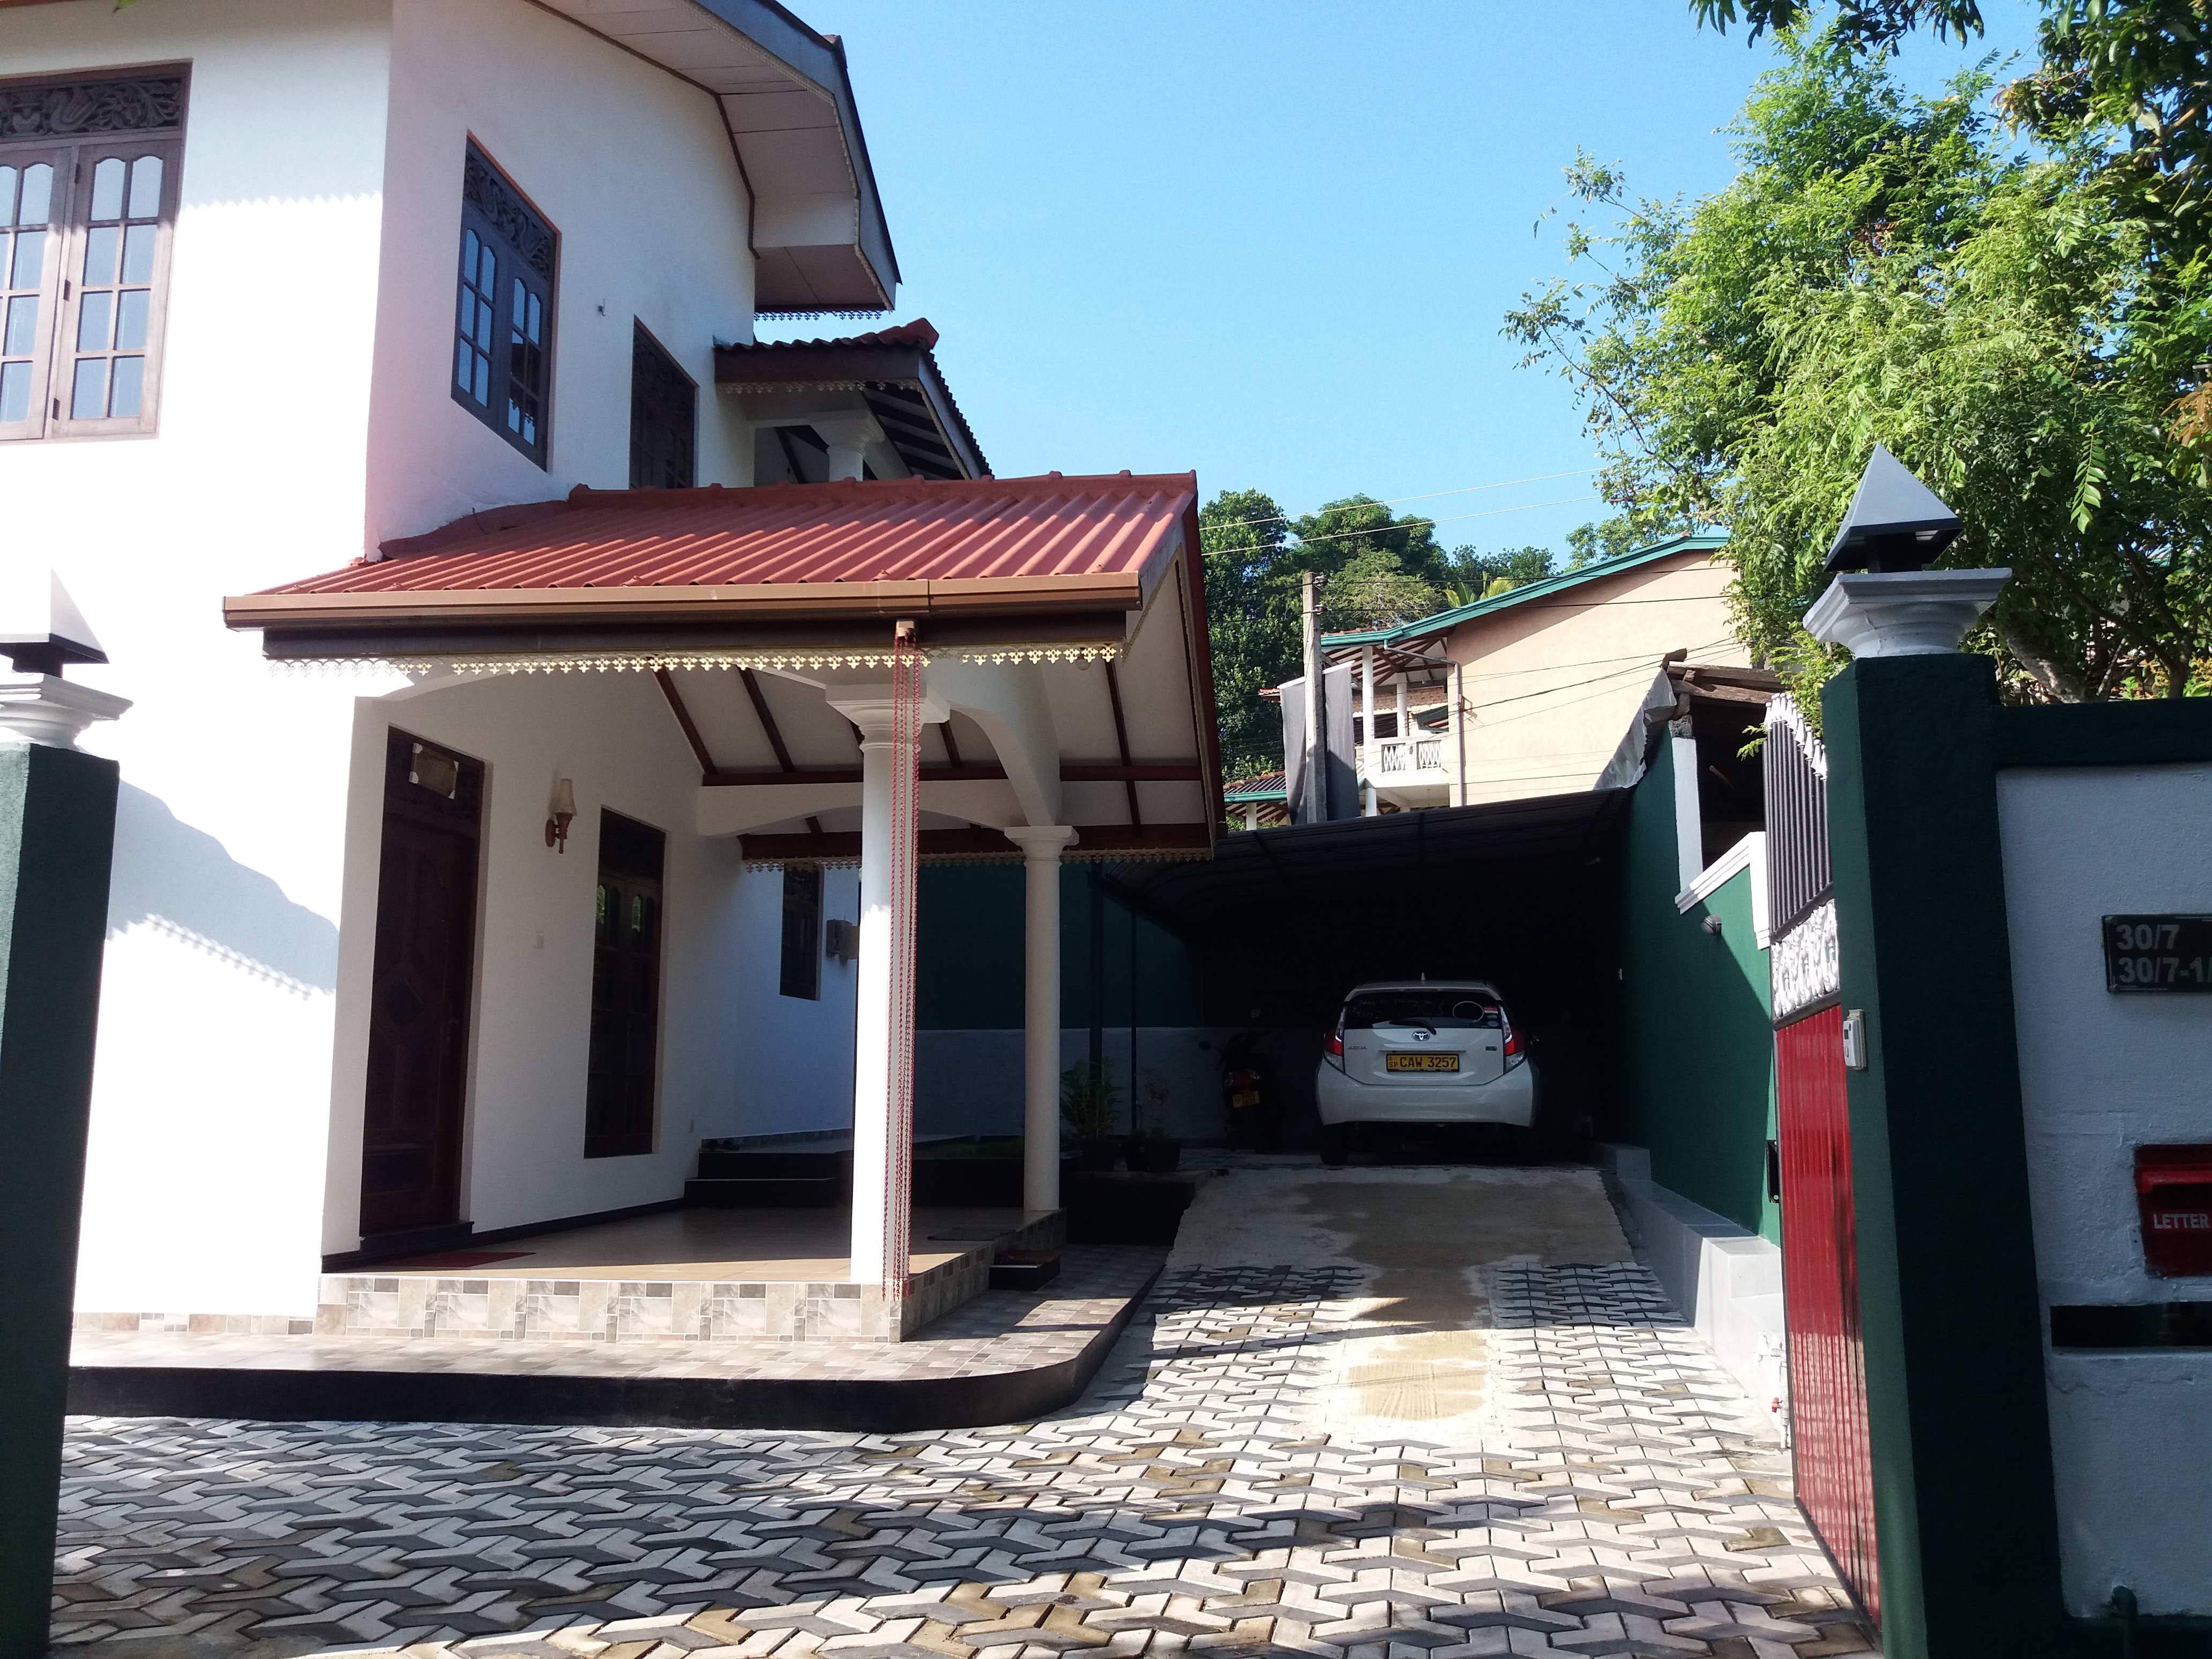 2Bedroom House for Rent in Meddawatta Matara Srilanka